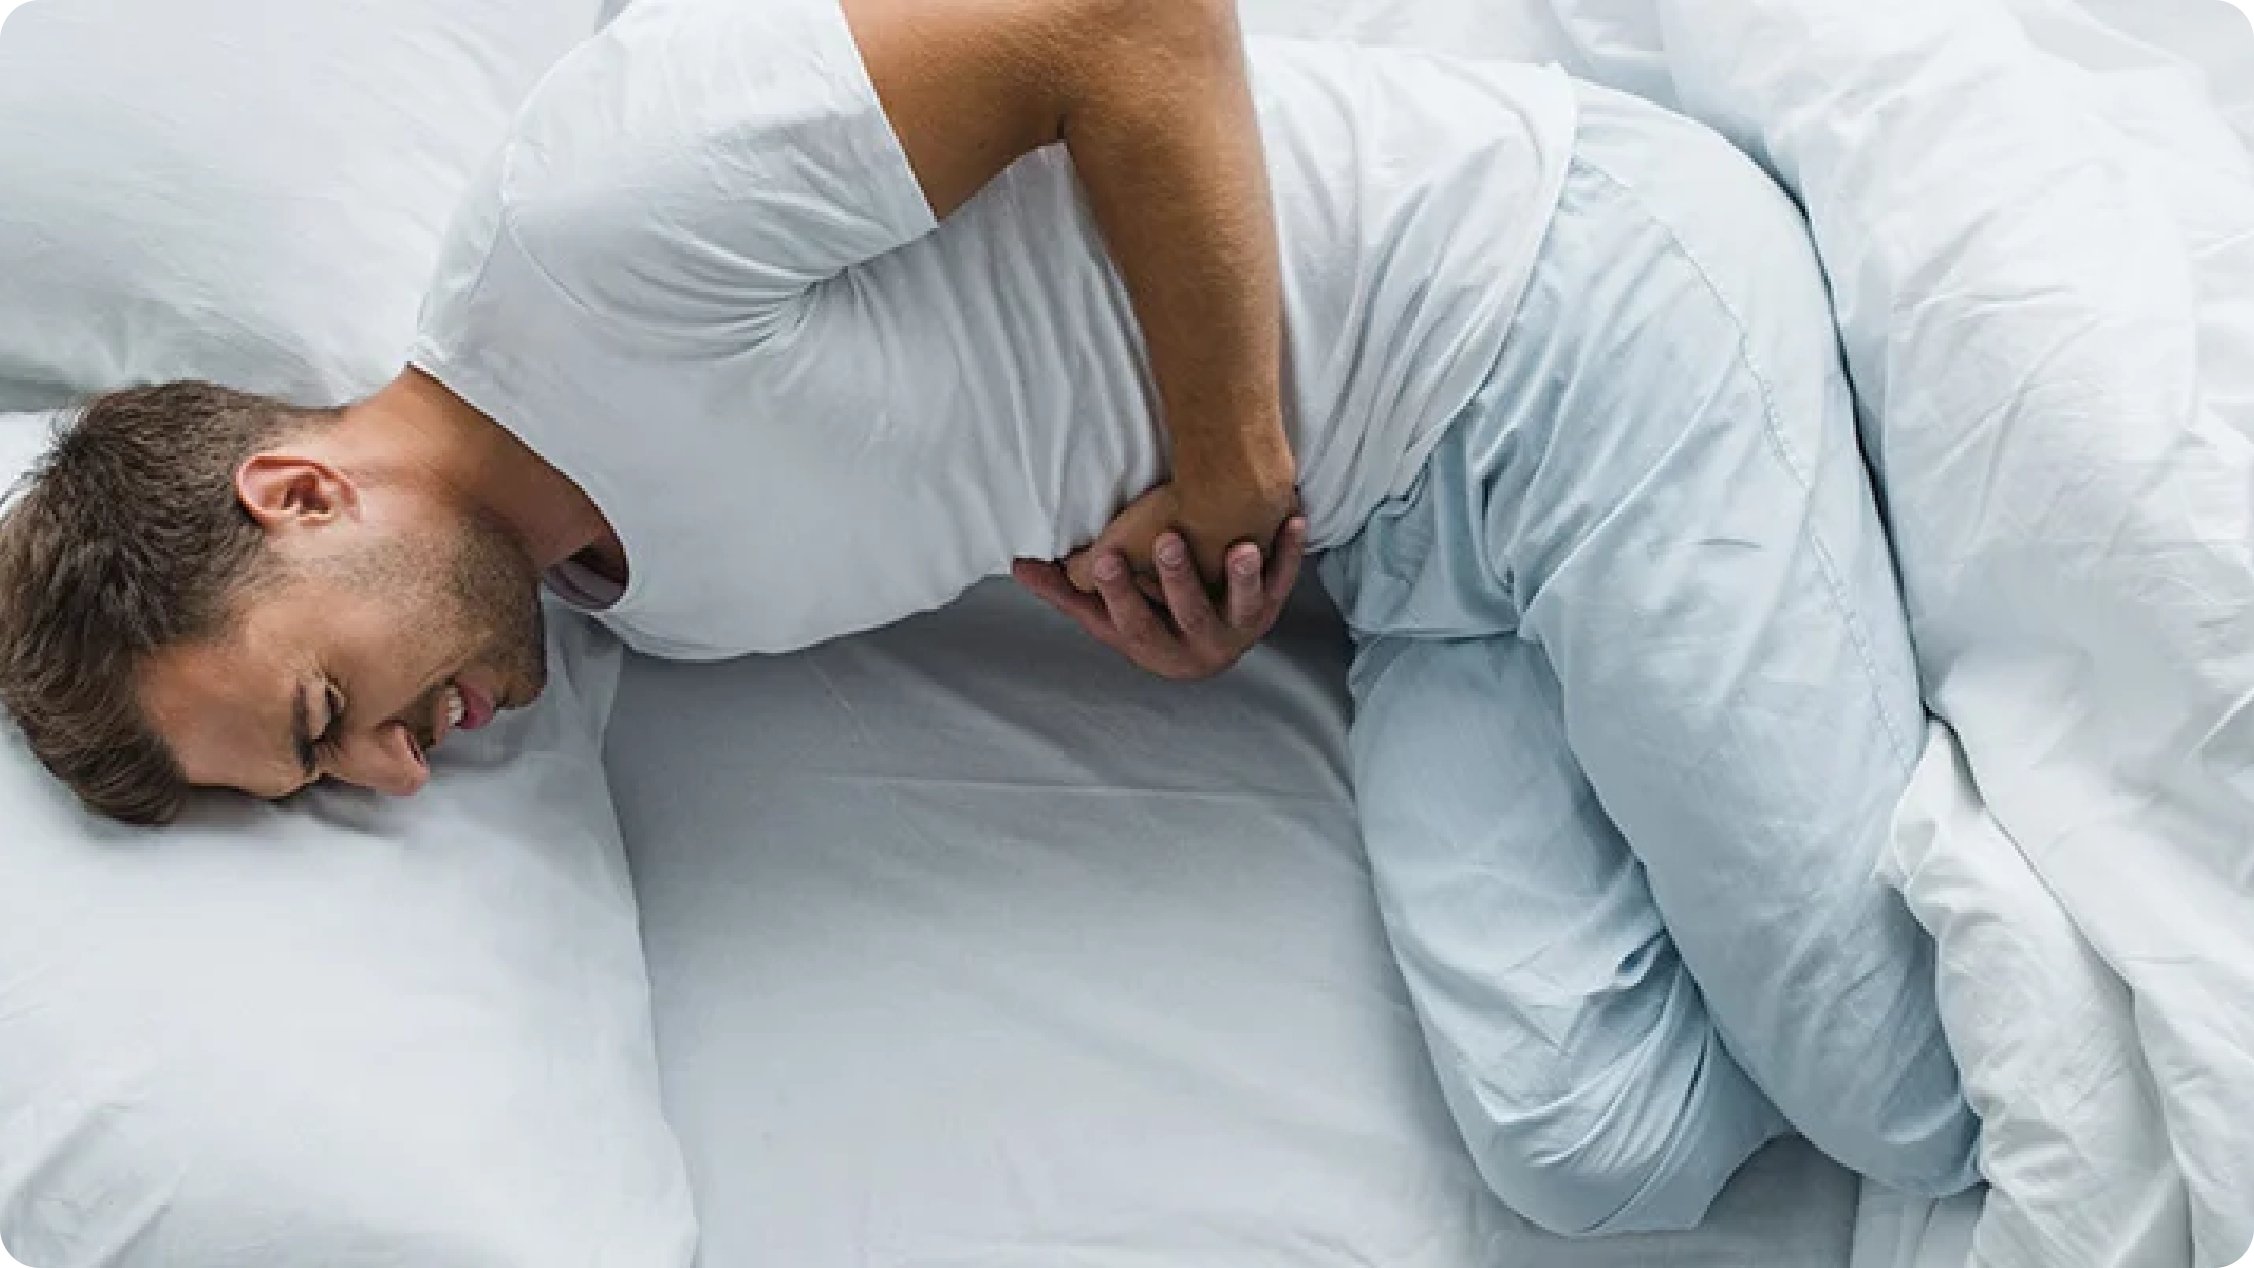 Ragazzo con maglia e pantaloni bianchi disteso su un letto con le mani sulla pancia e espressione dolorante